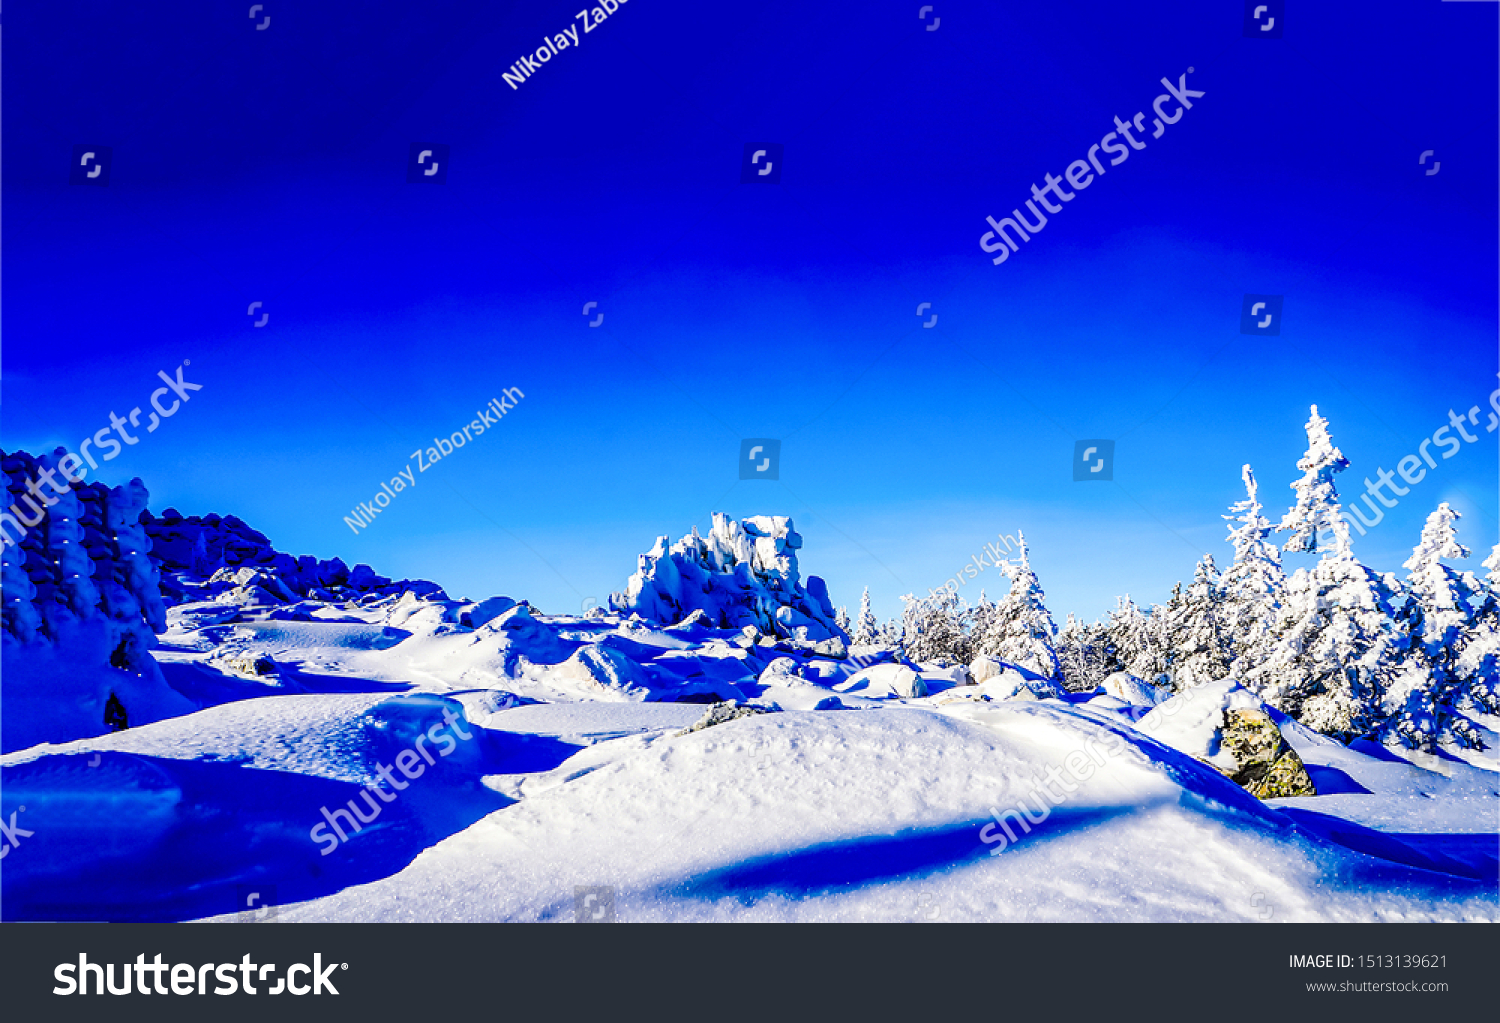 Winter snow fir trees nature landscape #1513139621